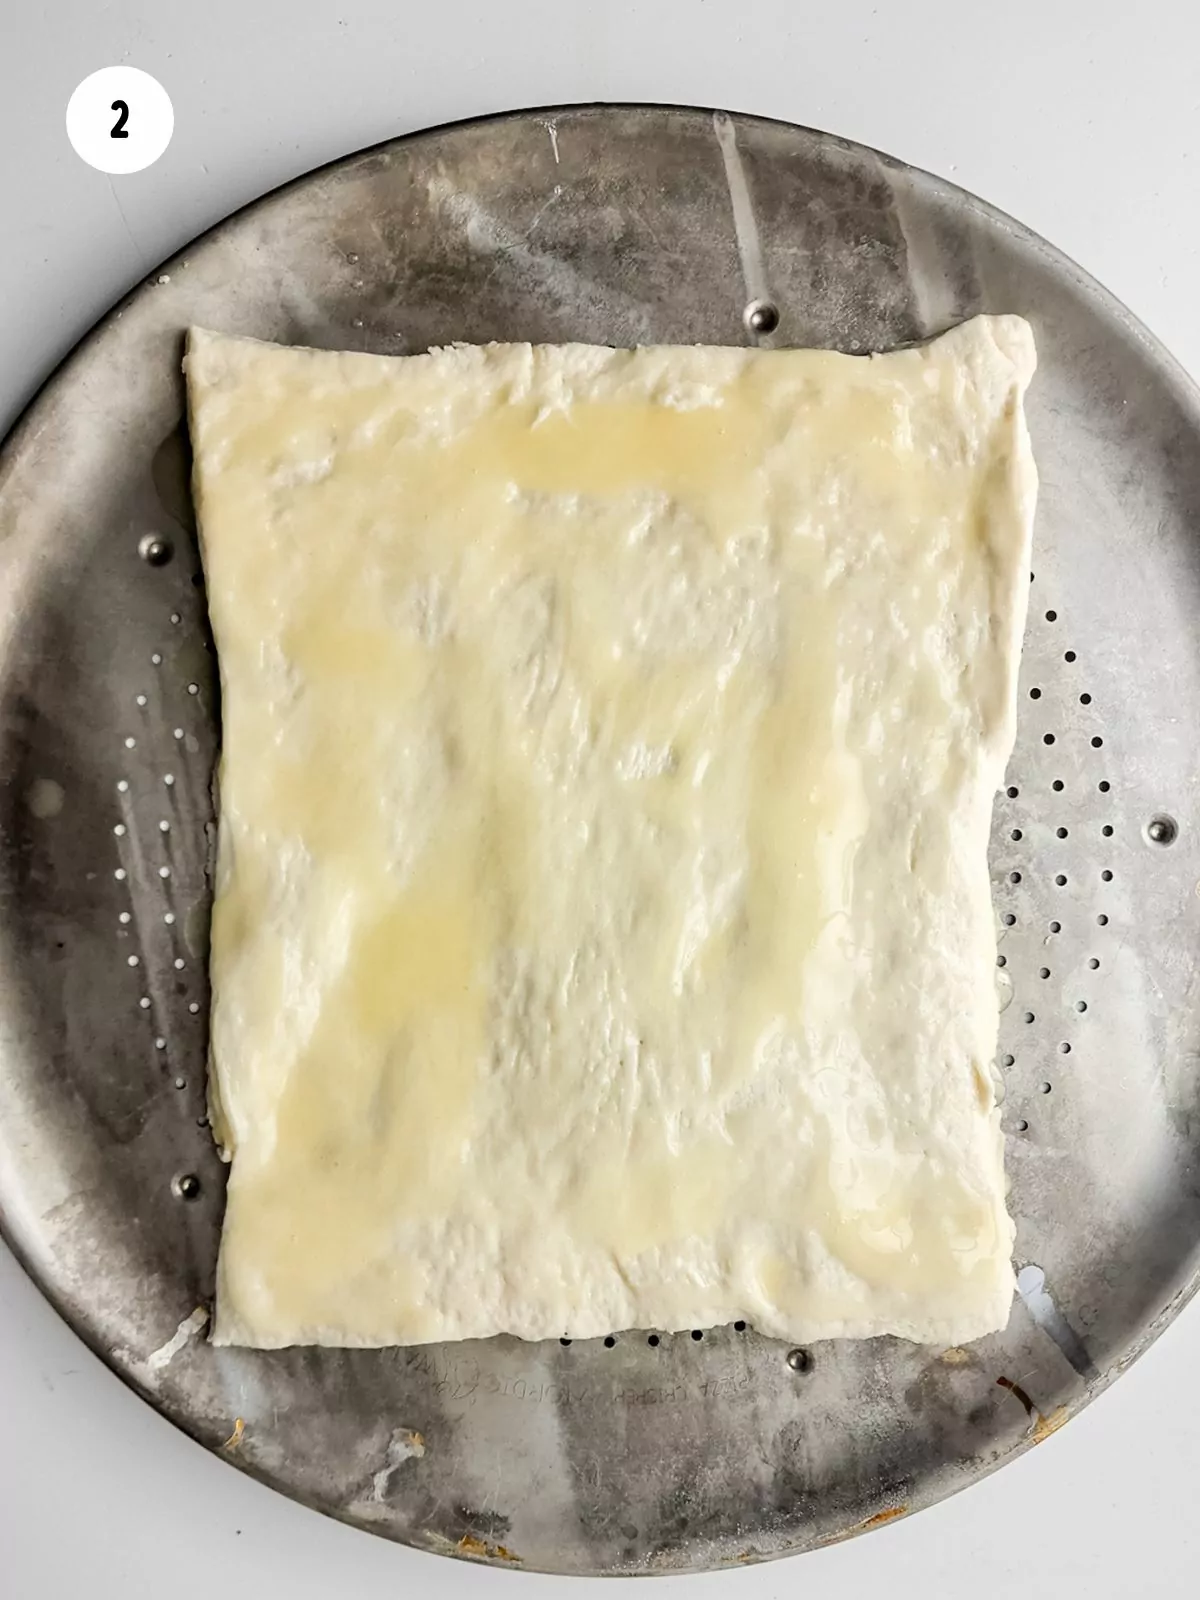 Brush butter on dough